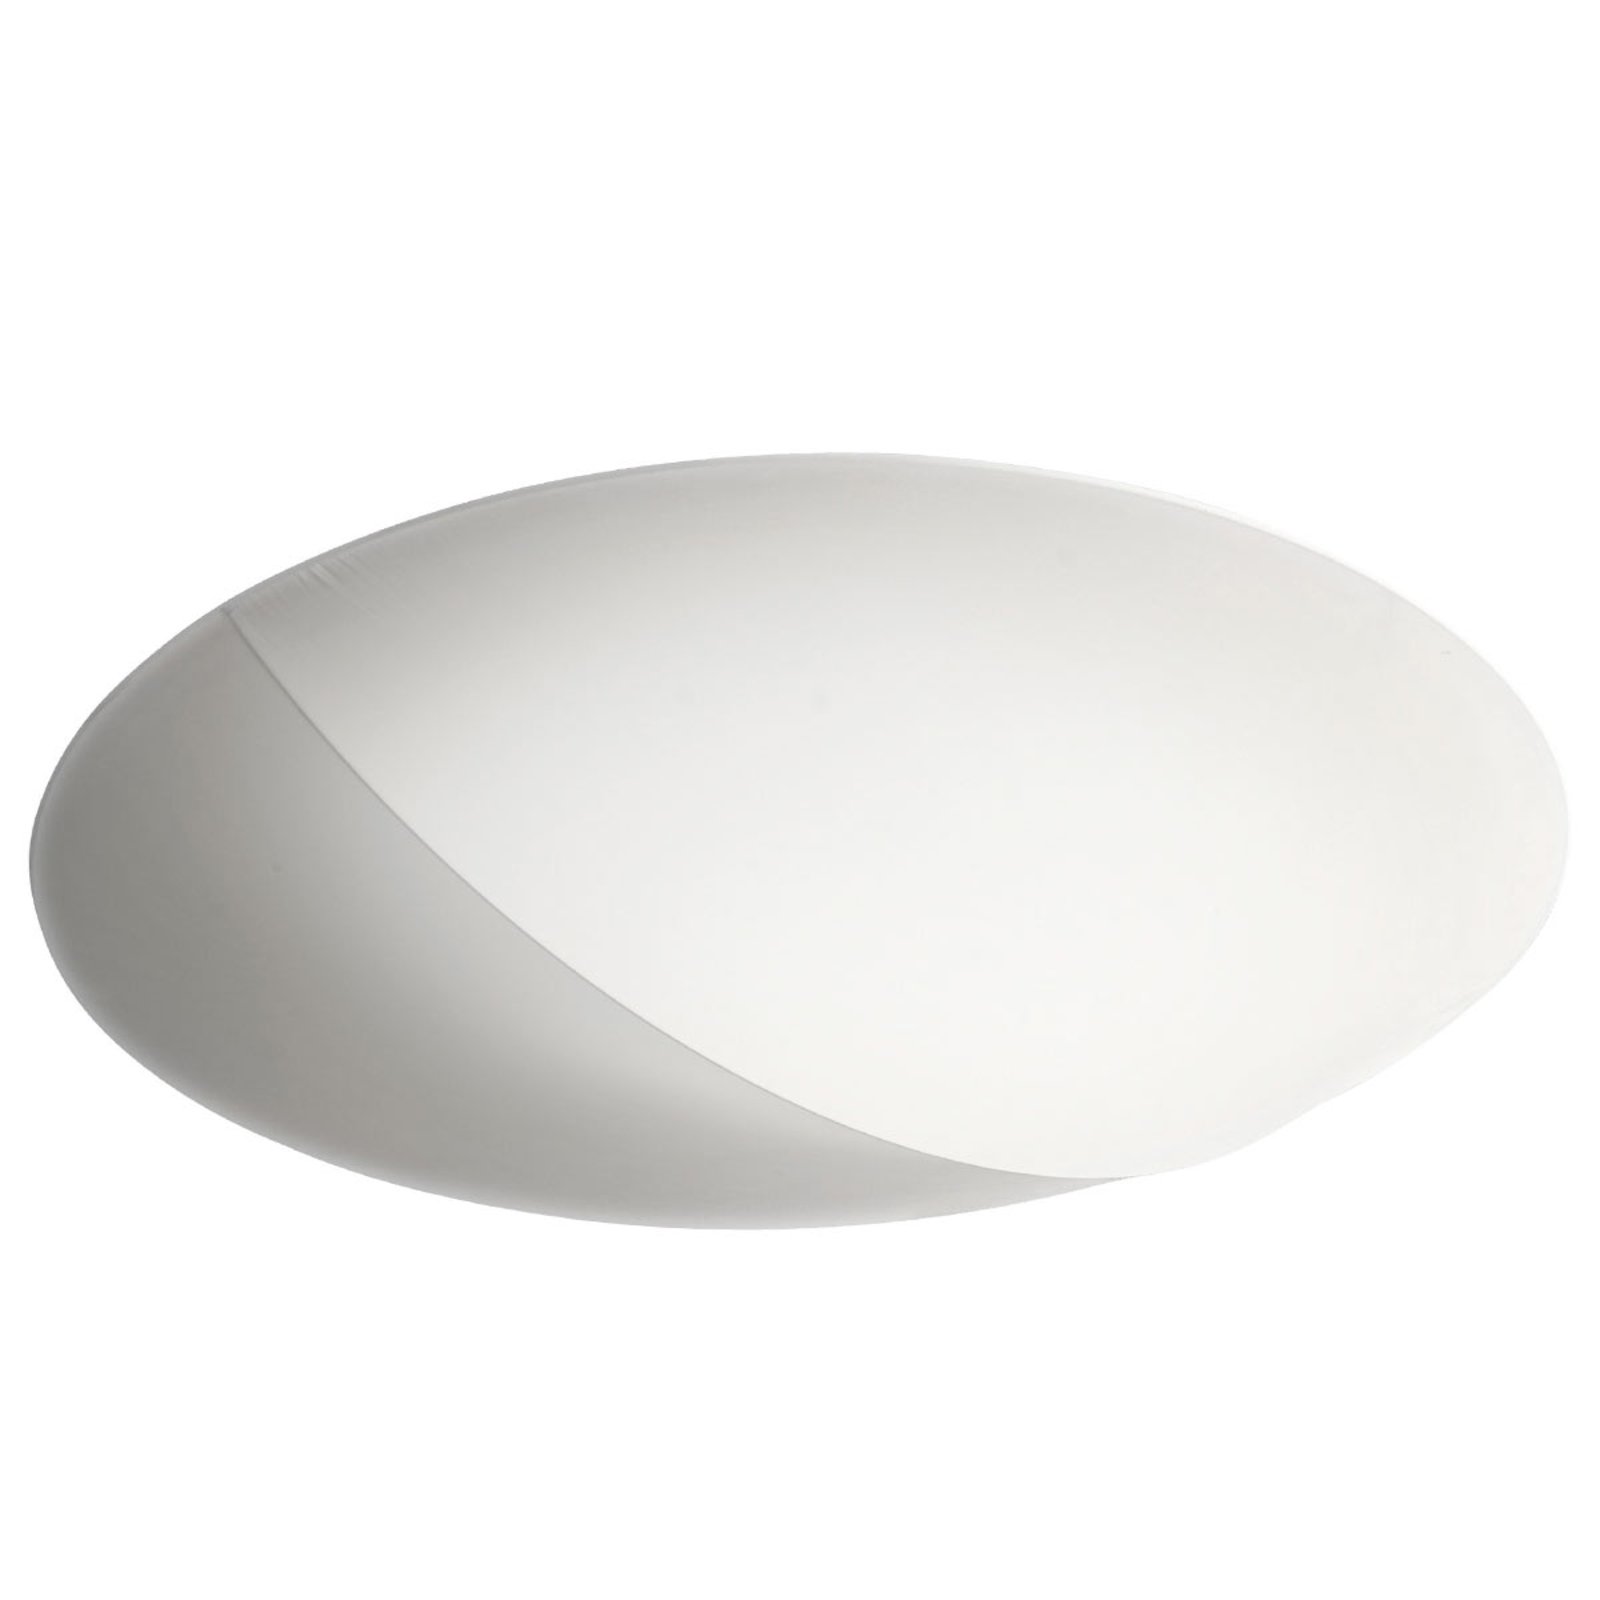 Axolight Nelly tekstilloftlampe, hvid, 100 cm